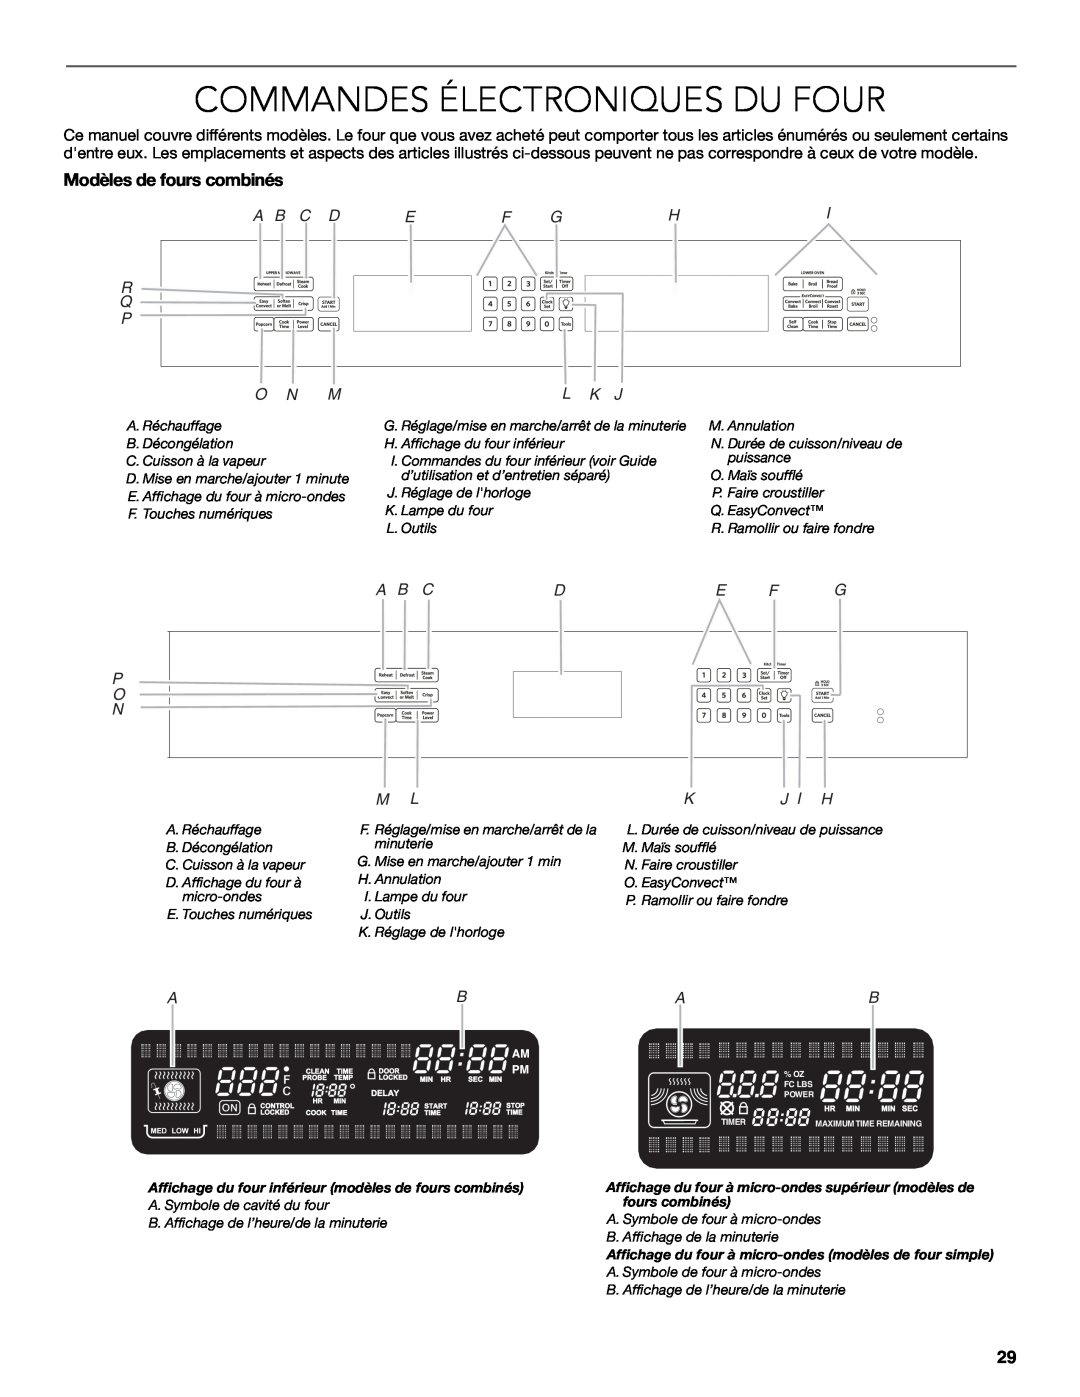 KitchenAid W10354195B Commandes Électroniques Du Four, Modèles de fours combinés, K J I H, A B C D Ef Ghi R Q P, O N M 